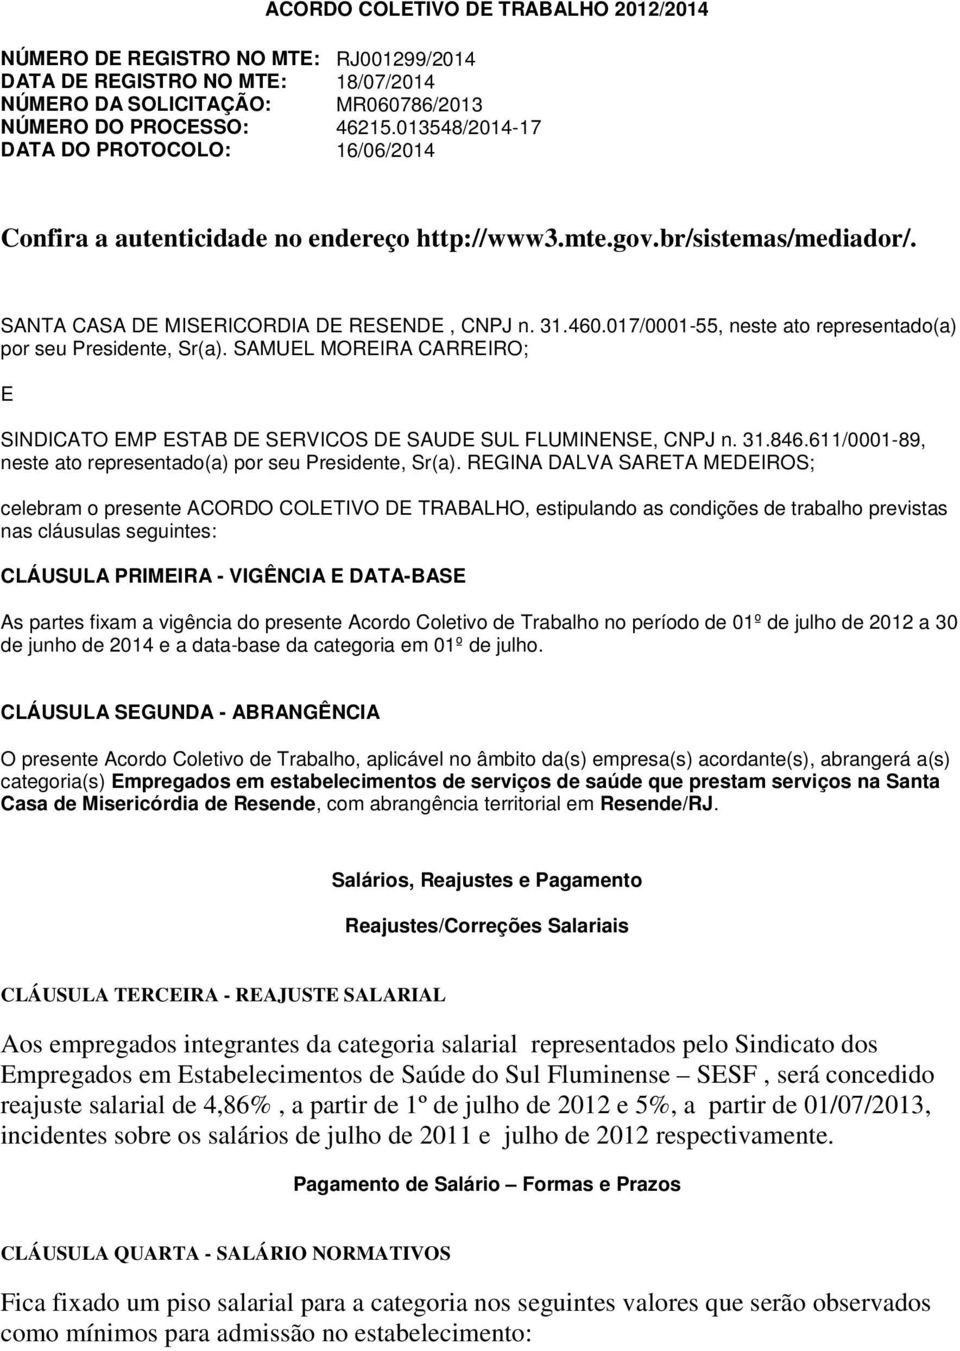 017/0001-55, neste ato representado(a) por seu Presidente, Sr(a). SAMUEL MOREIRA CARREIRO; E SINDICATO EMP ESTAB DE SERVICOS DE SAUDE SUL FLUMINENSE, CNPJ n. 31.846.